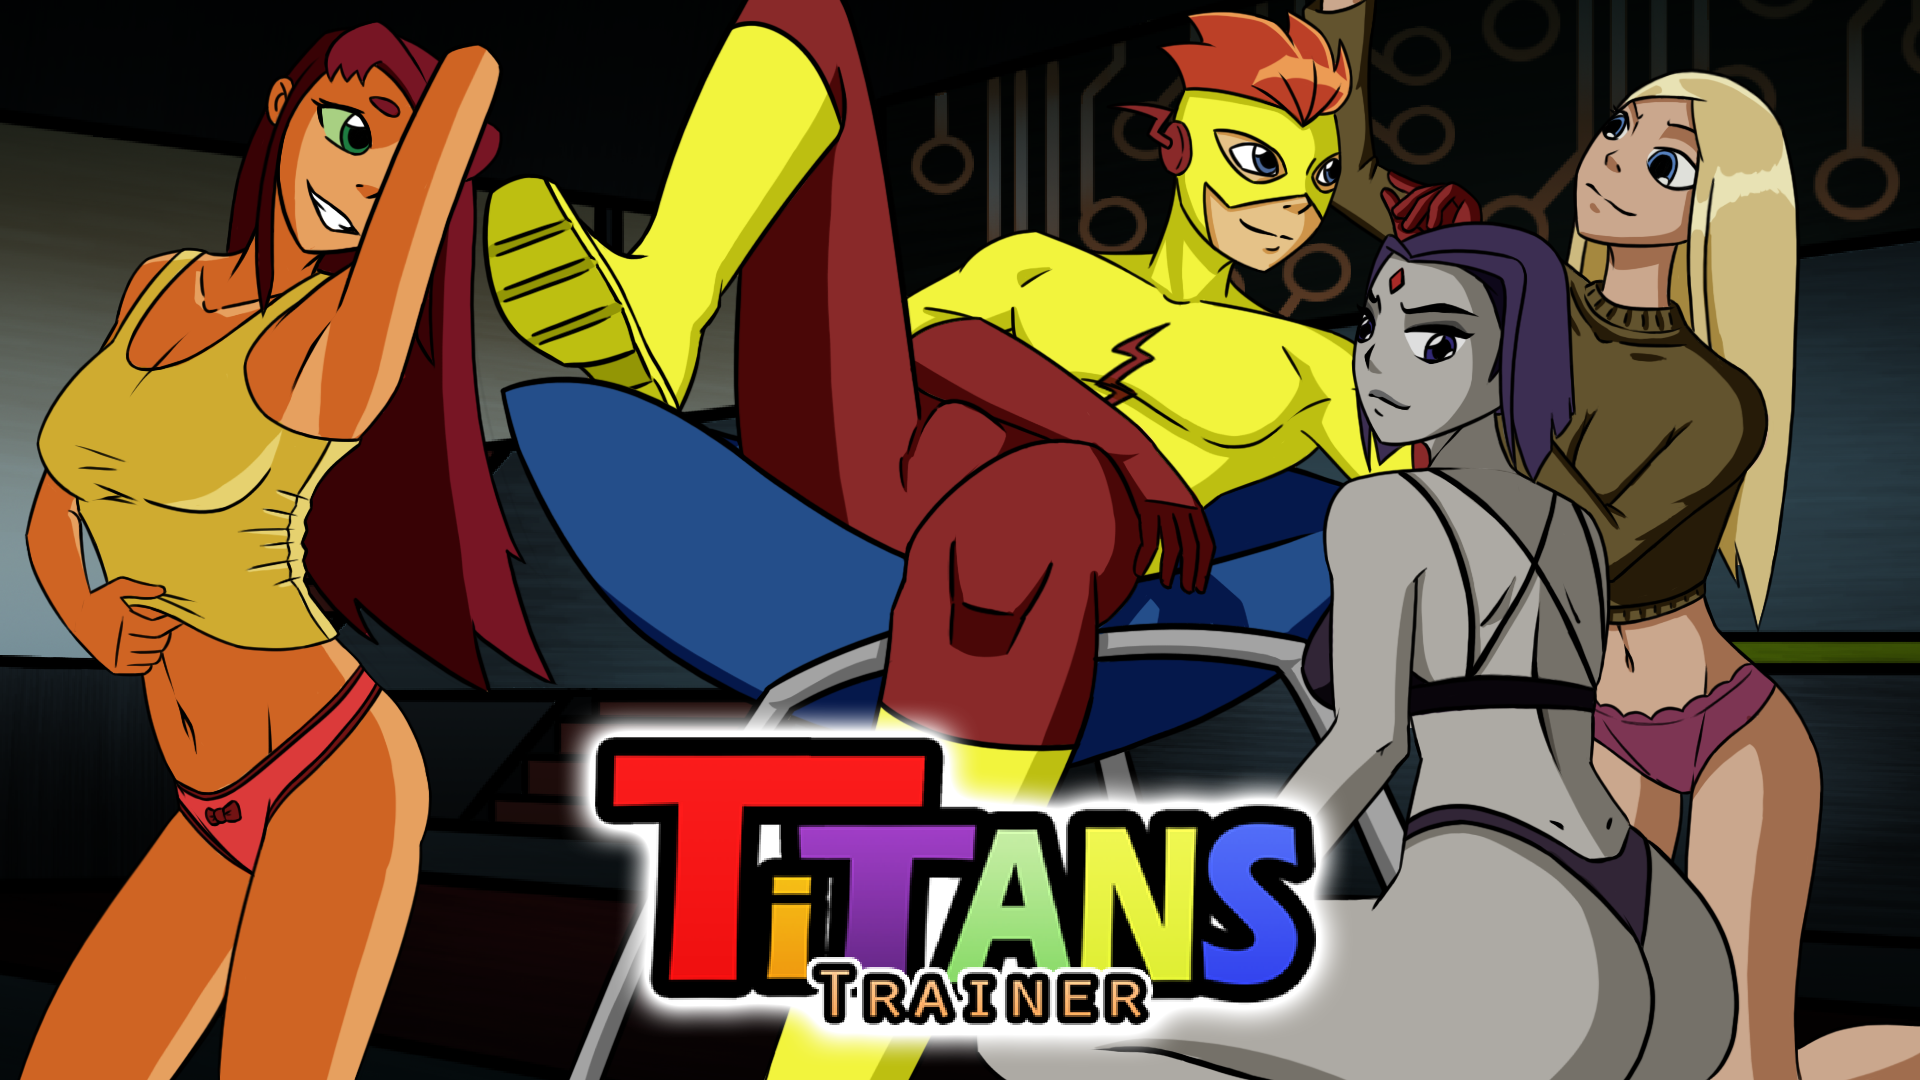 Team titans trainer